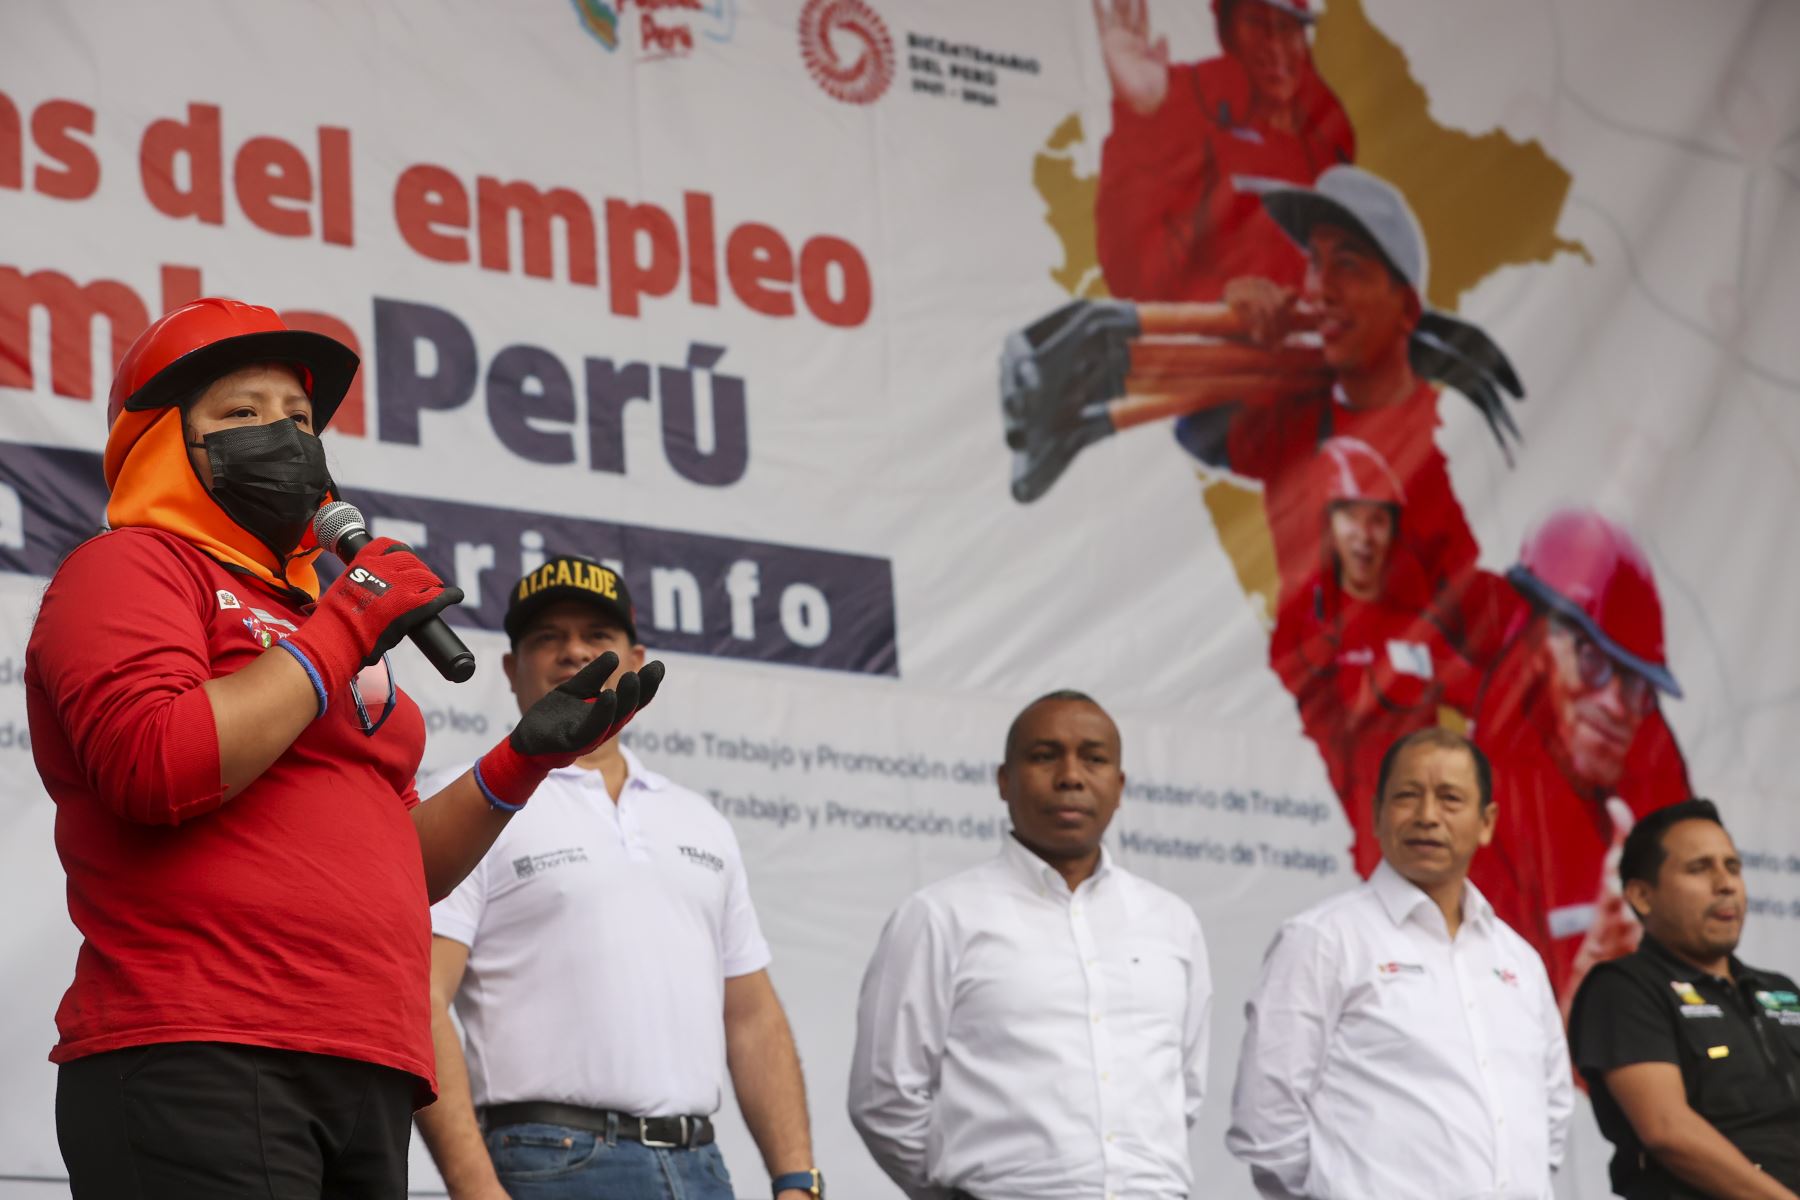 El ministro de Trabajo y Promoción del Empleo, Daniel Maurate Romero, participó en el lanzamiento en Lima Metropolitana del Programa Llamkasun Perú, en el distrito de Villa María del Triunfo. 

Foto:ANDINA/ Juan Carlos Guzmán Negrini